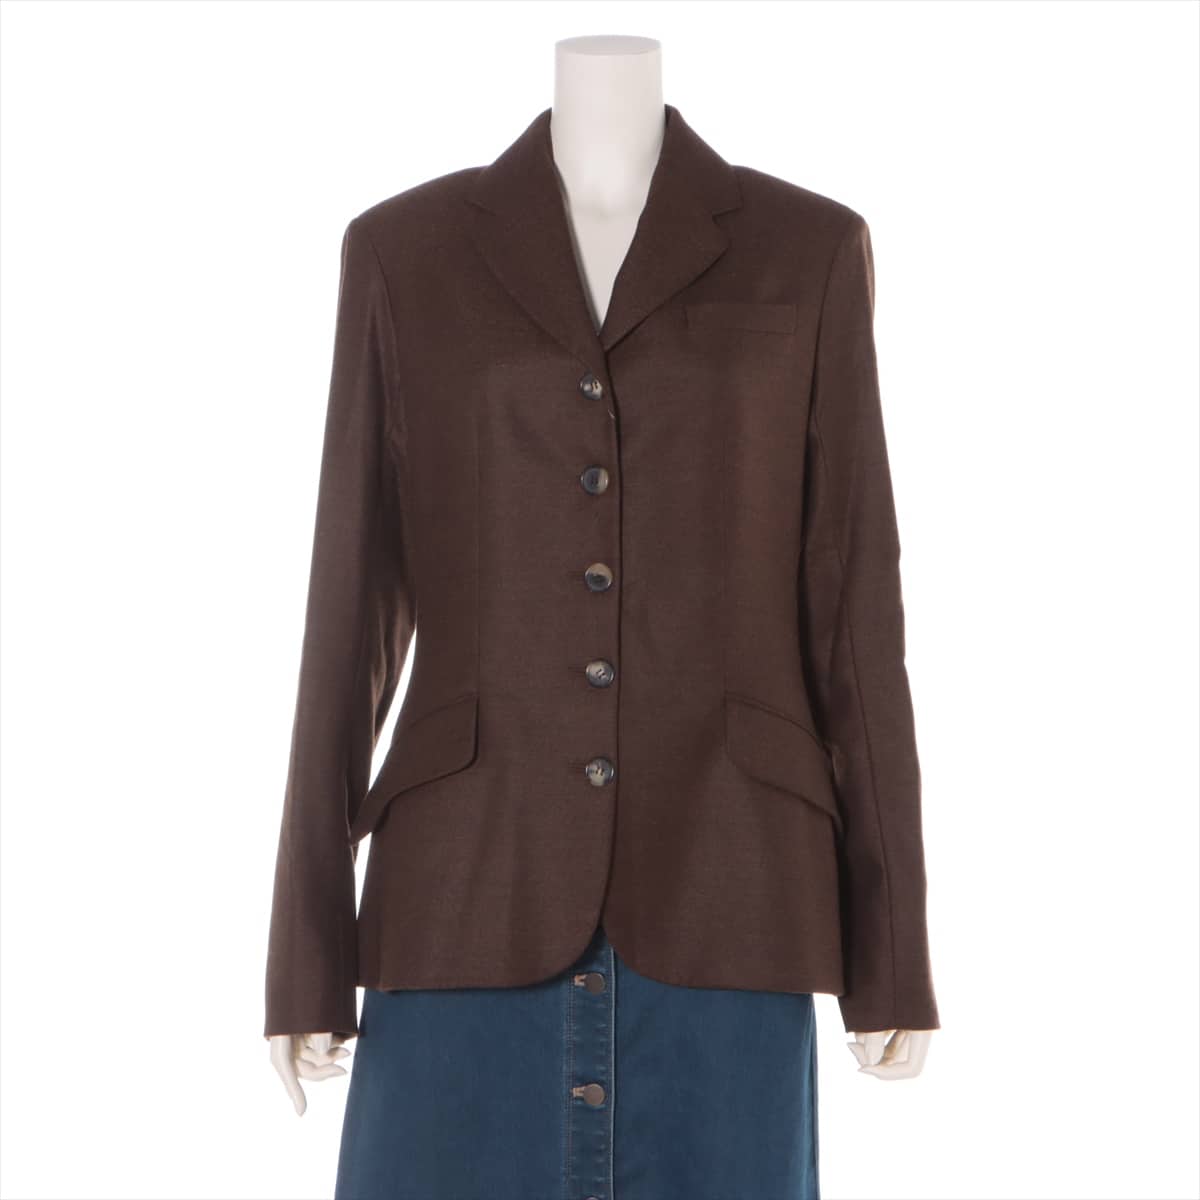 Hermès Wool Tailored jacket 38 Ladies' Brown  Has a star mark